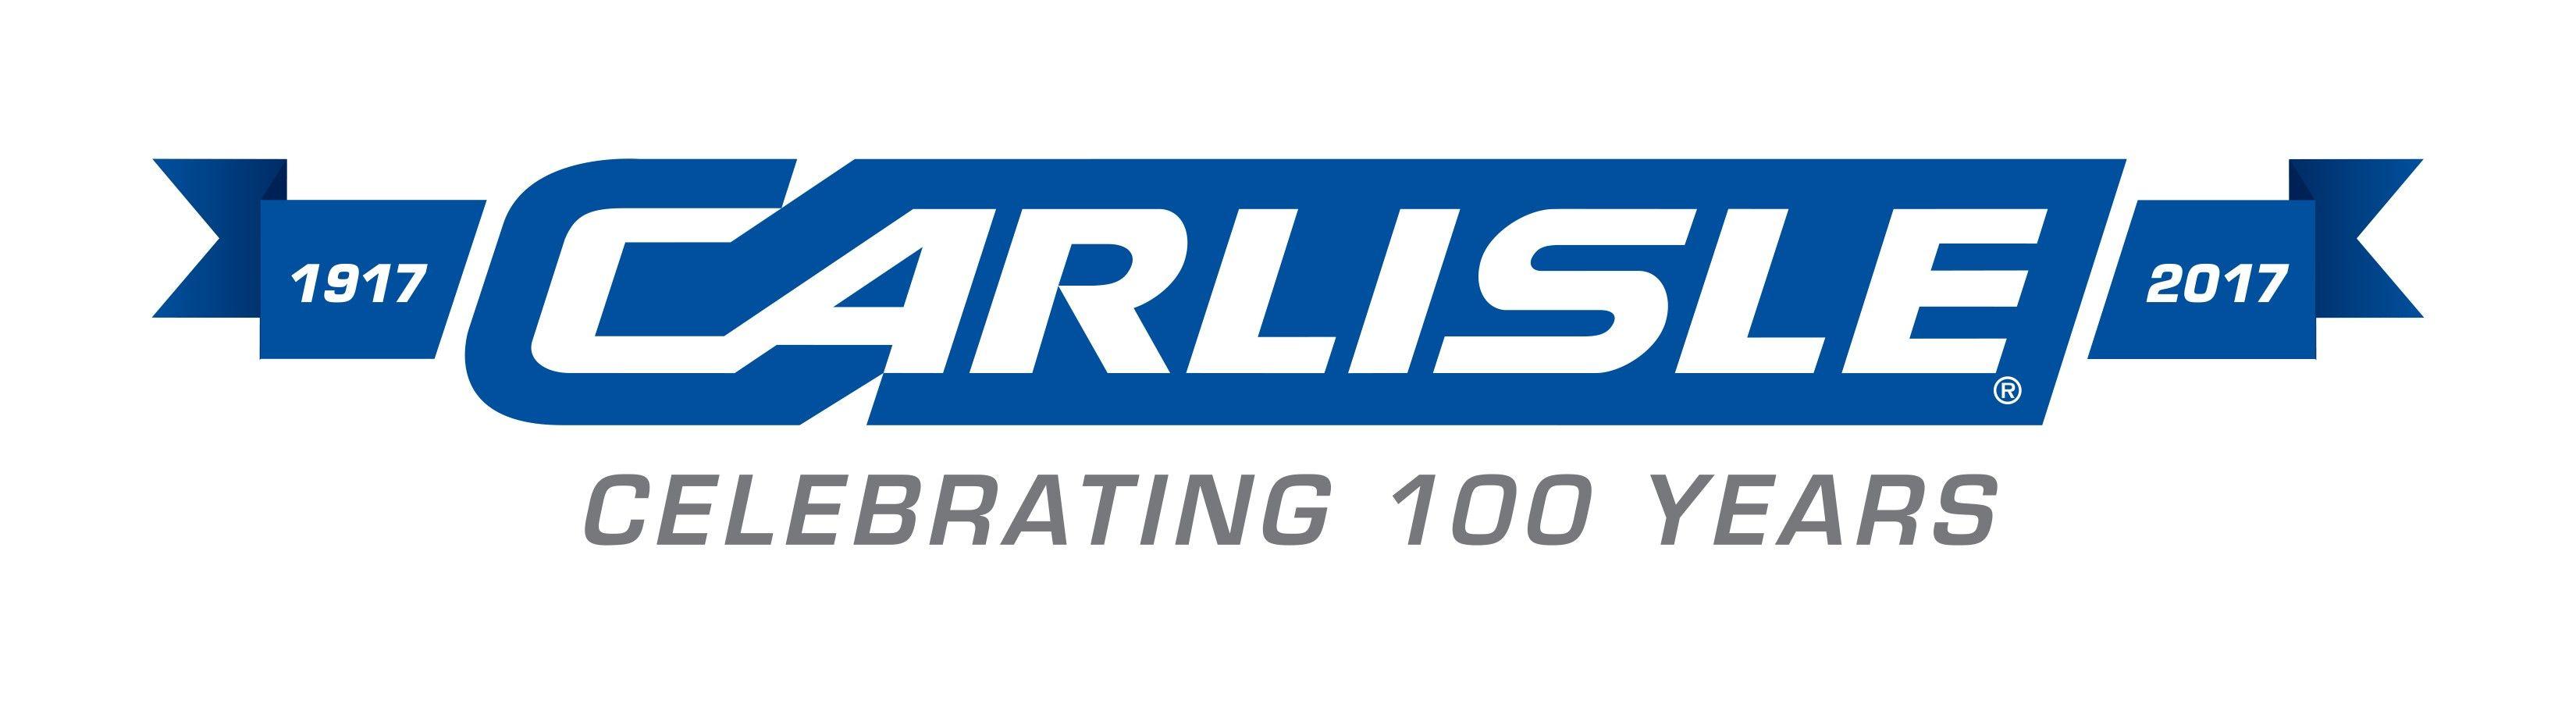 Carlisle Logo - Carlisle Cos. to Acquire Petersen Aluminum for $197 Million | 2018 ...